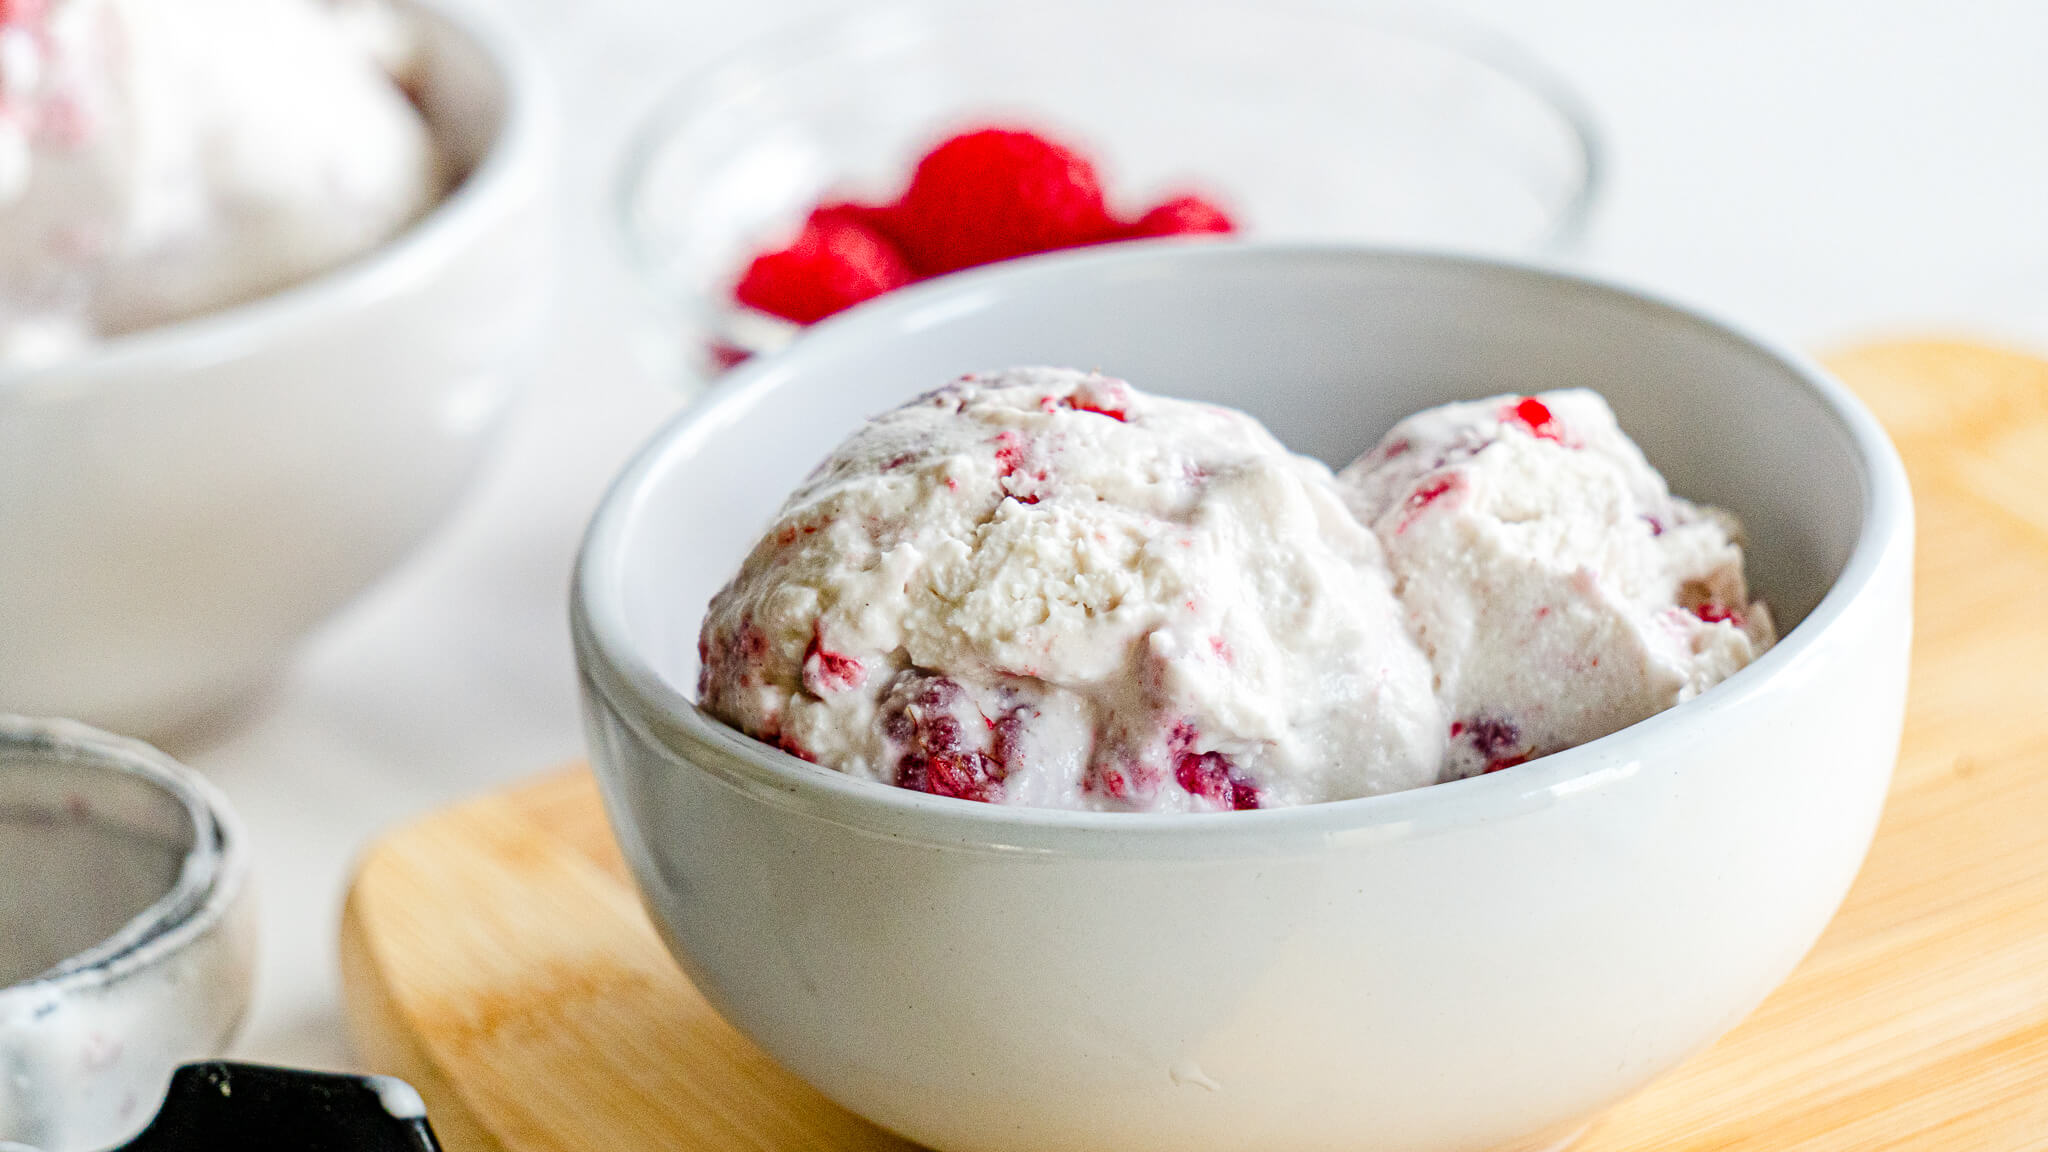 non-dairy ice cream with raspberries